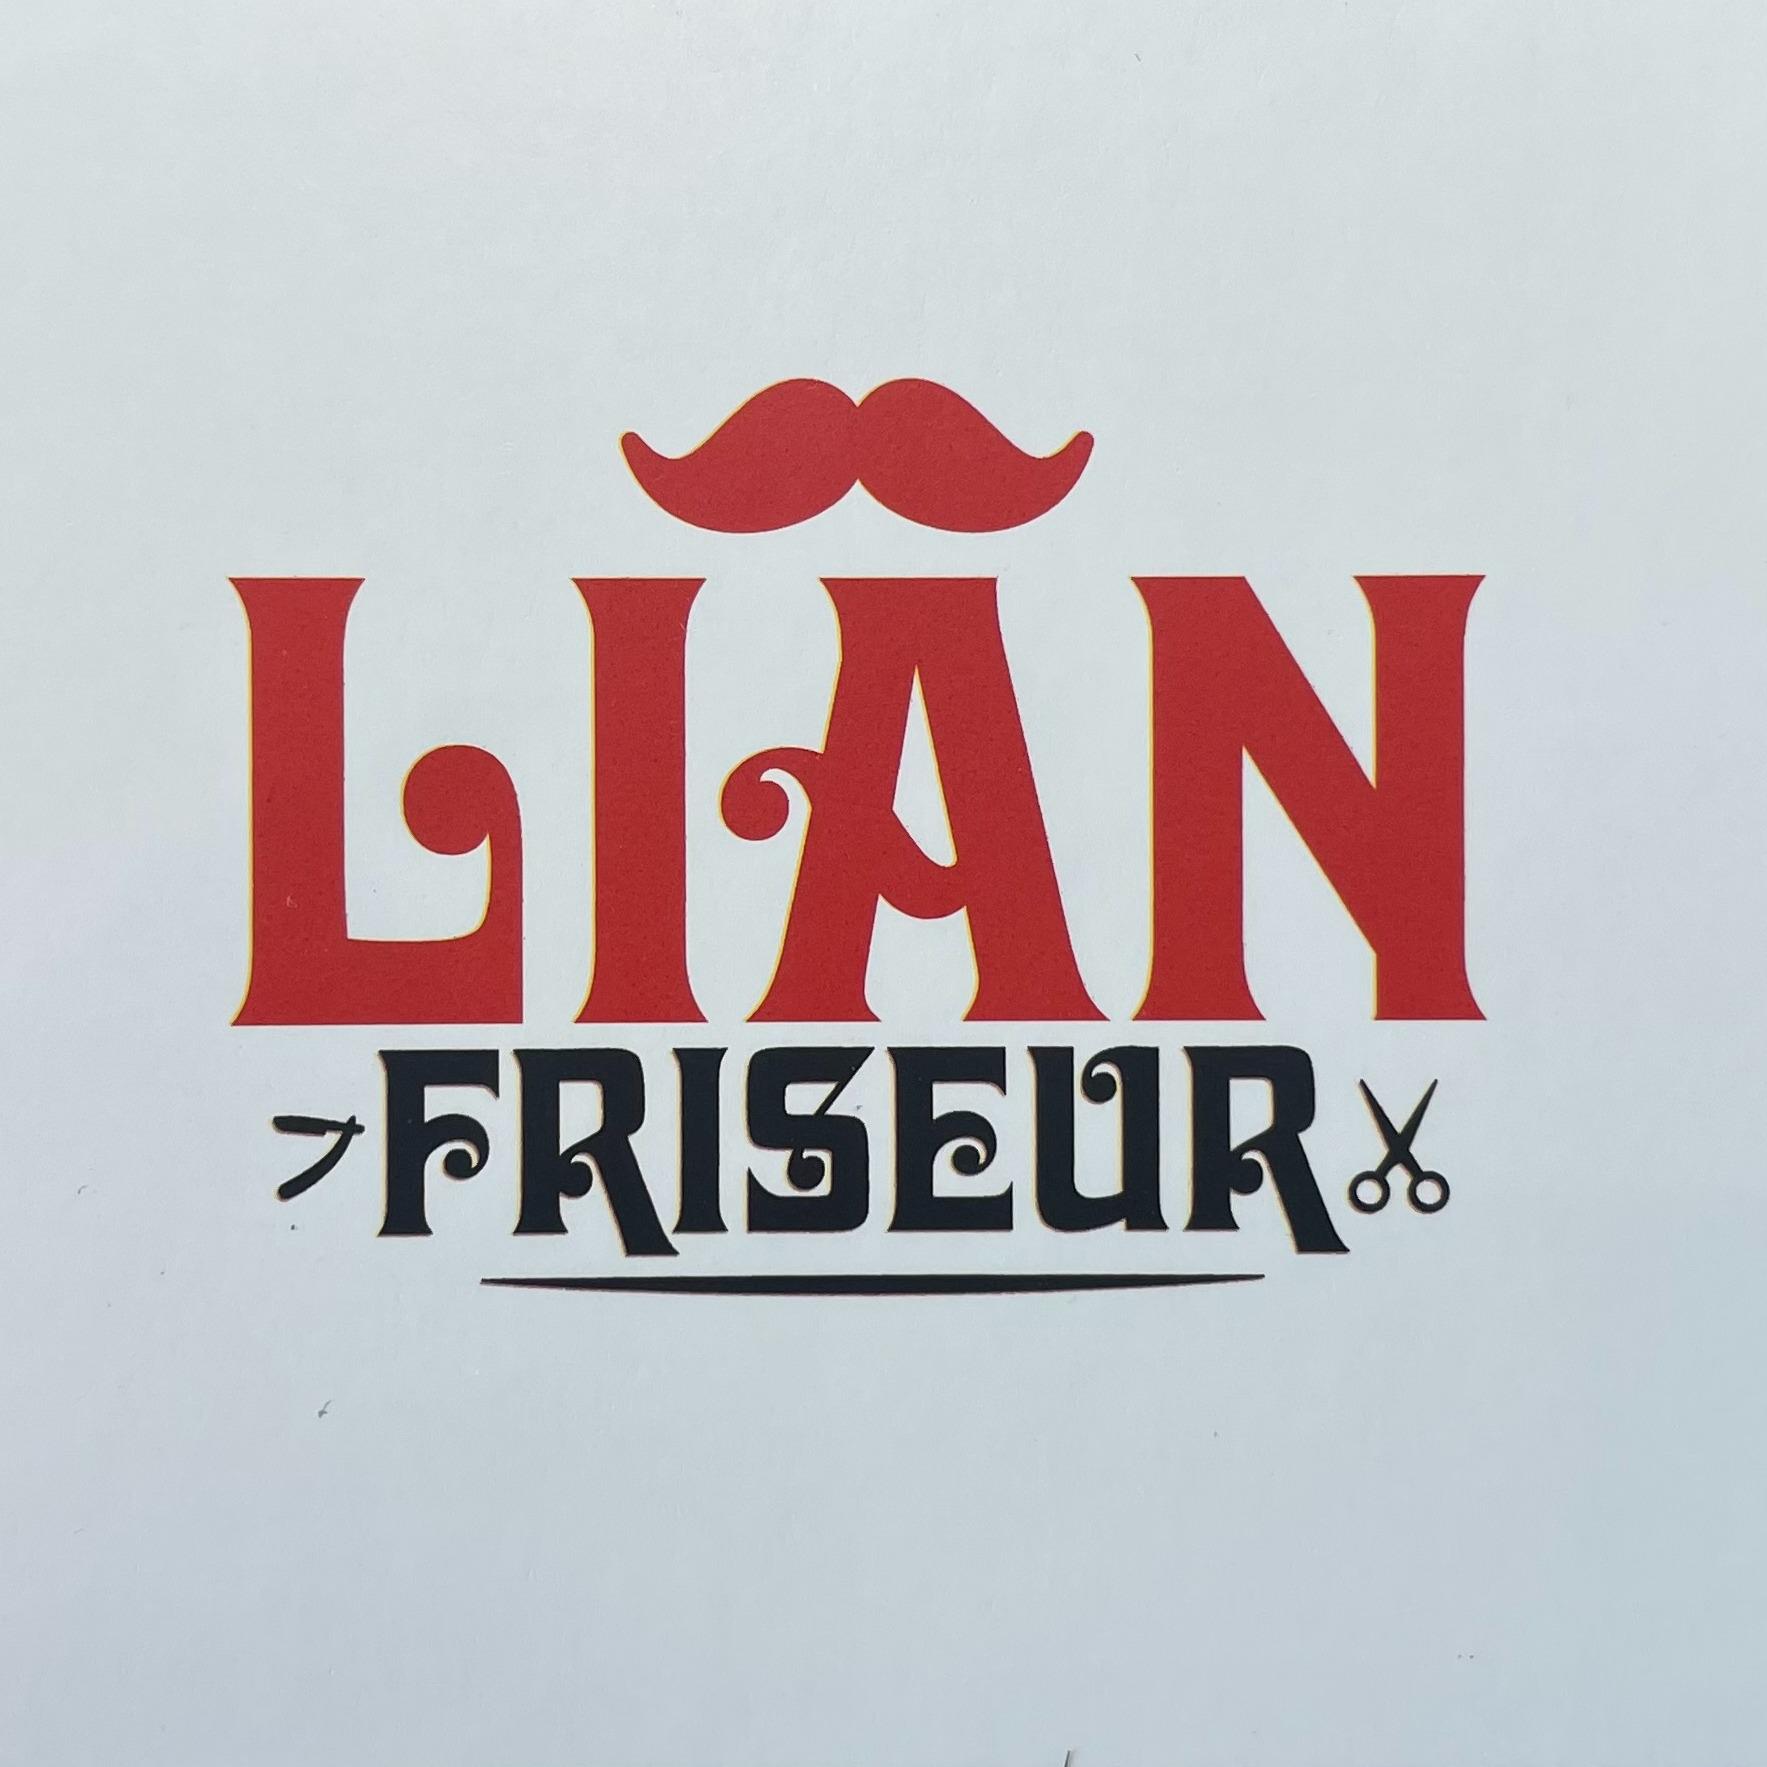 Lian Friseur in Bremen - Logo